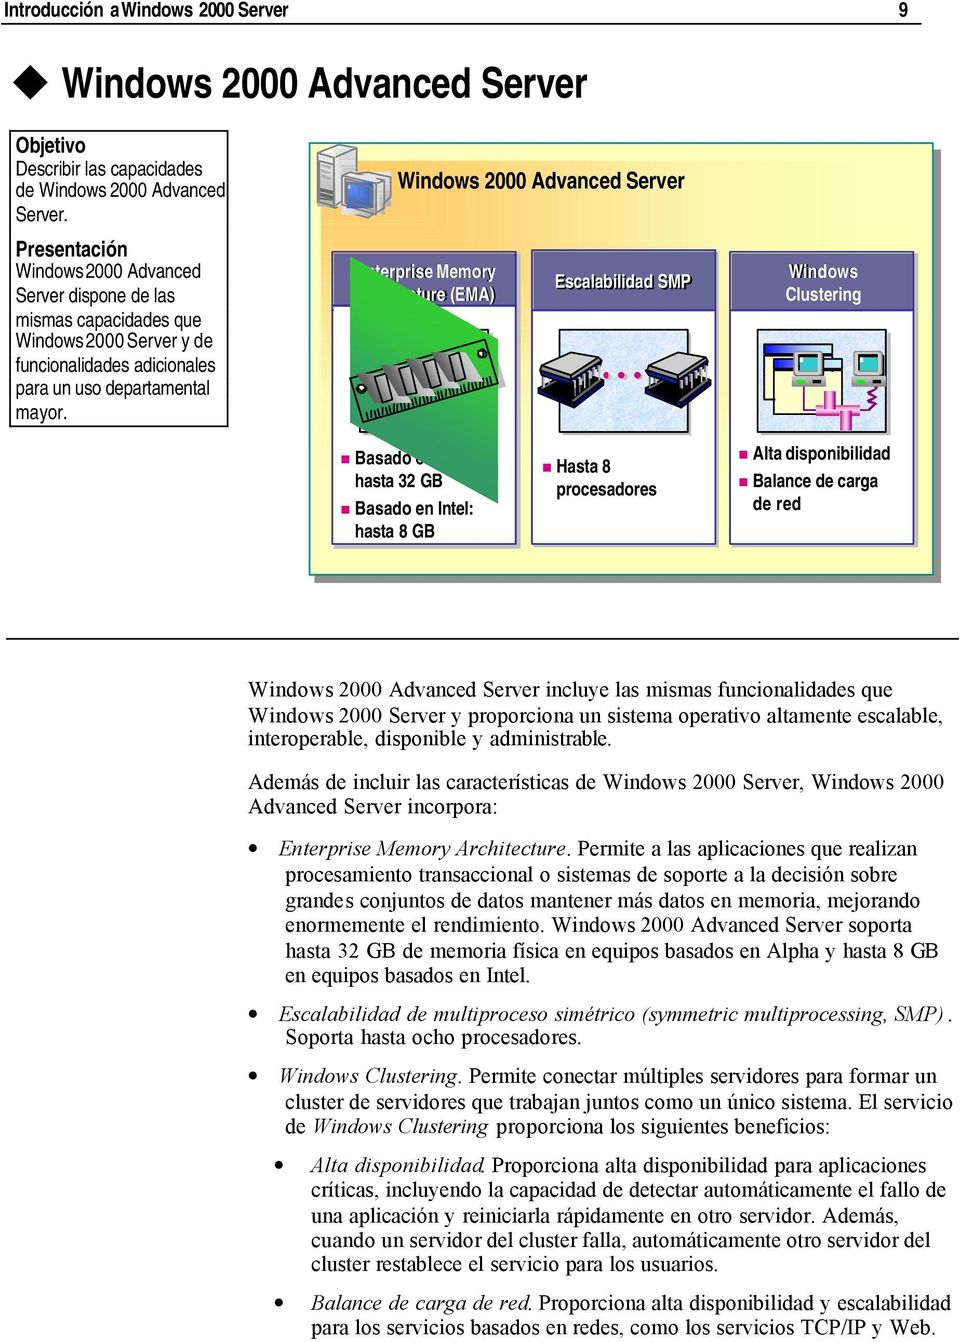 Windows 2000 Advanced Server Enterprise Memory Architecture (EMA) Escalabilidad SMP Windows Clustering Basado en Alpha: hasta 32 GB Basado en Intel: hasta 8 GB Hasta 8 procesadores Alta